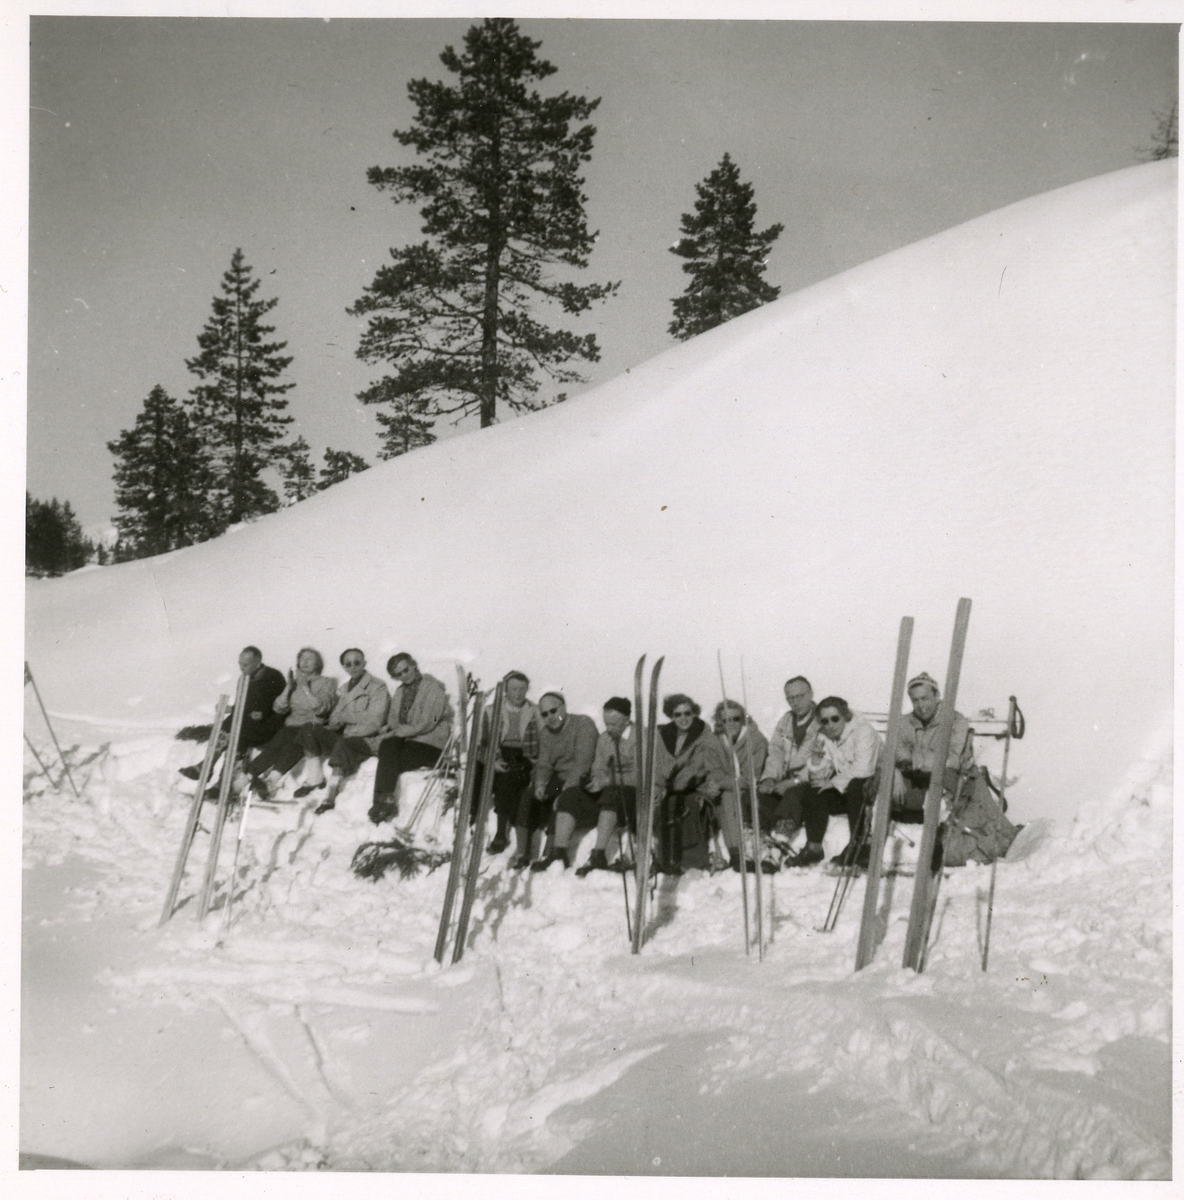 En gruppe på skitur i vinterlandskap, muligens i Meråker. Usikker på hvem menneskene i bildet er.